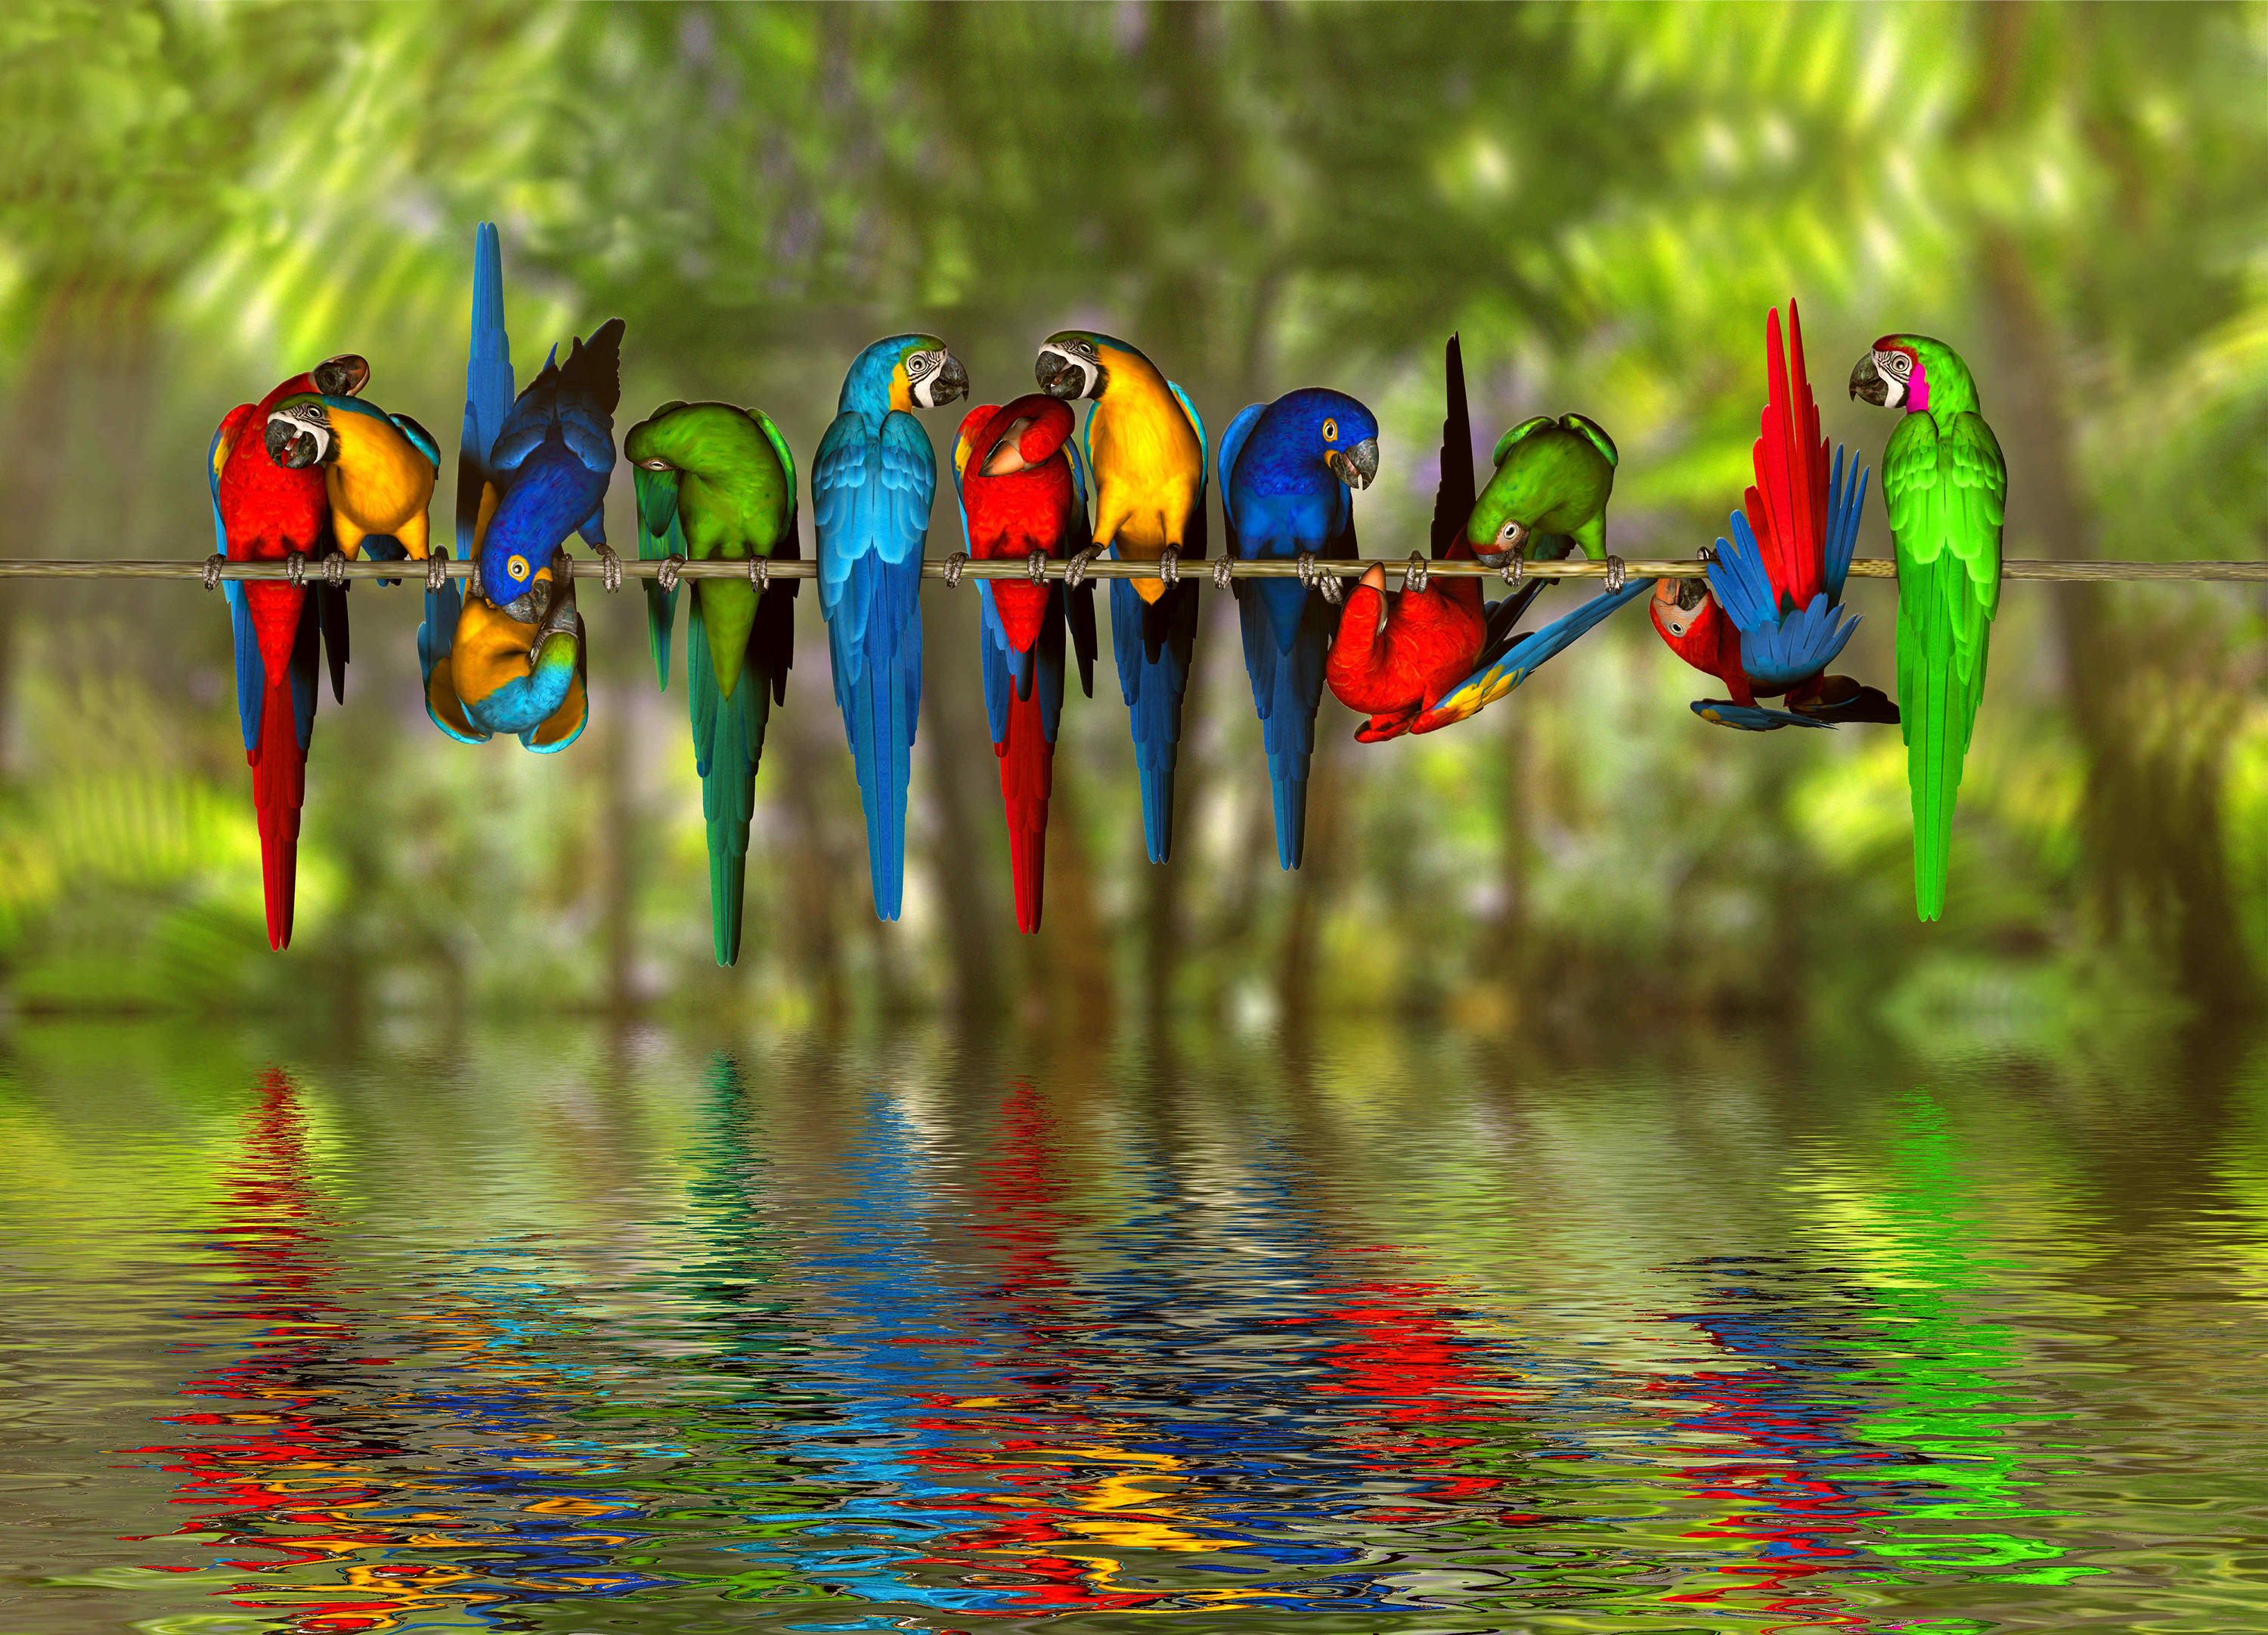 421514 descargar imagen ara macao, animales, guacamayo, ave, guacamayo azul y amarillo, vistoso, colores, guacamayo jacinto, reflejo, agua, aves: fondos de pantalla y protectores de pantalla gratis